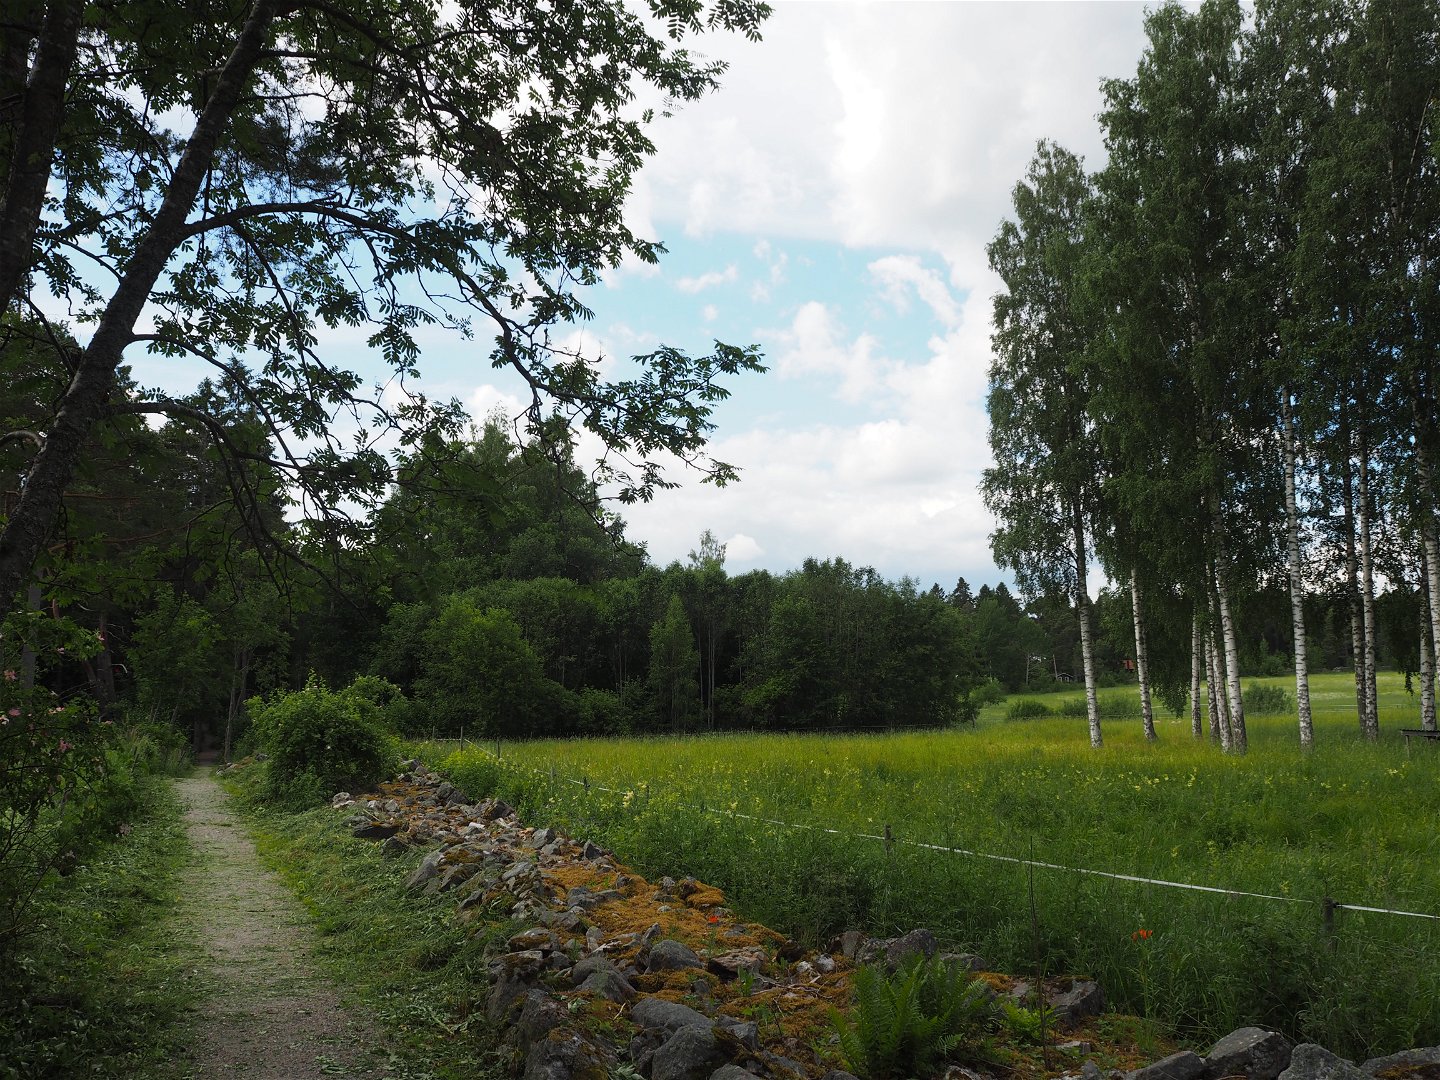 Norrlandets kustled med utsikt över betesmark i grönska